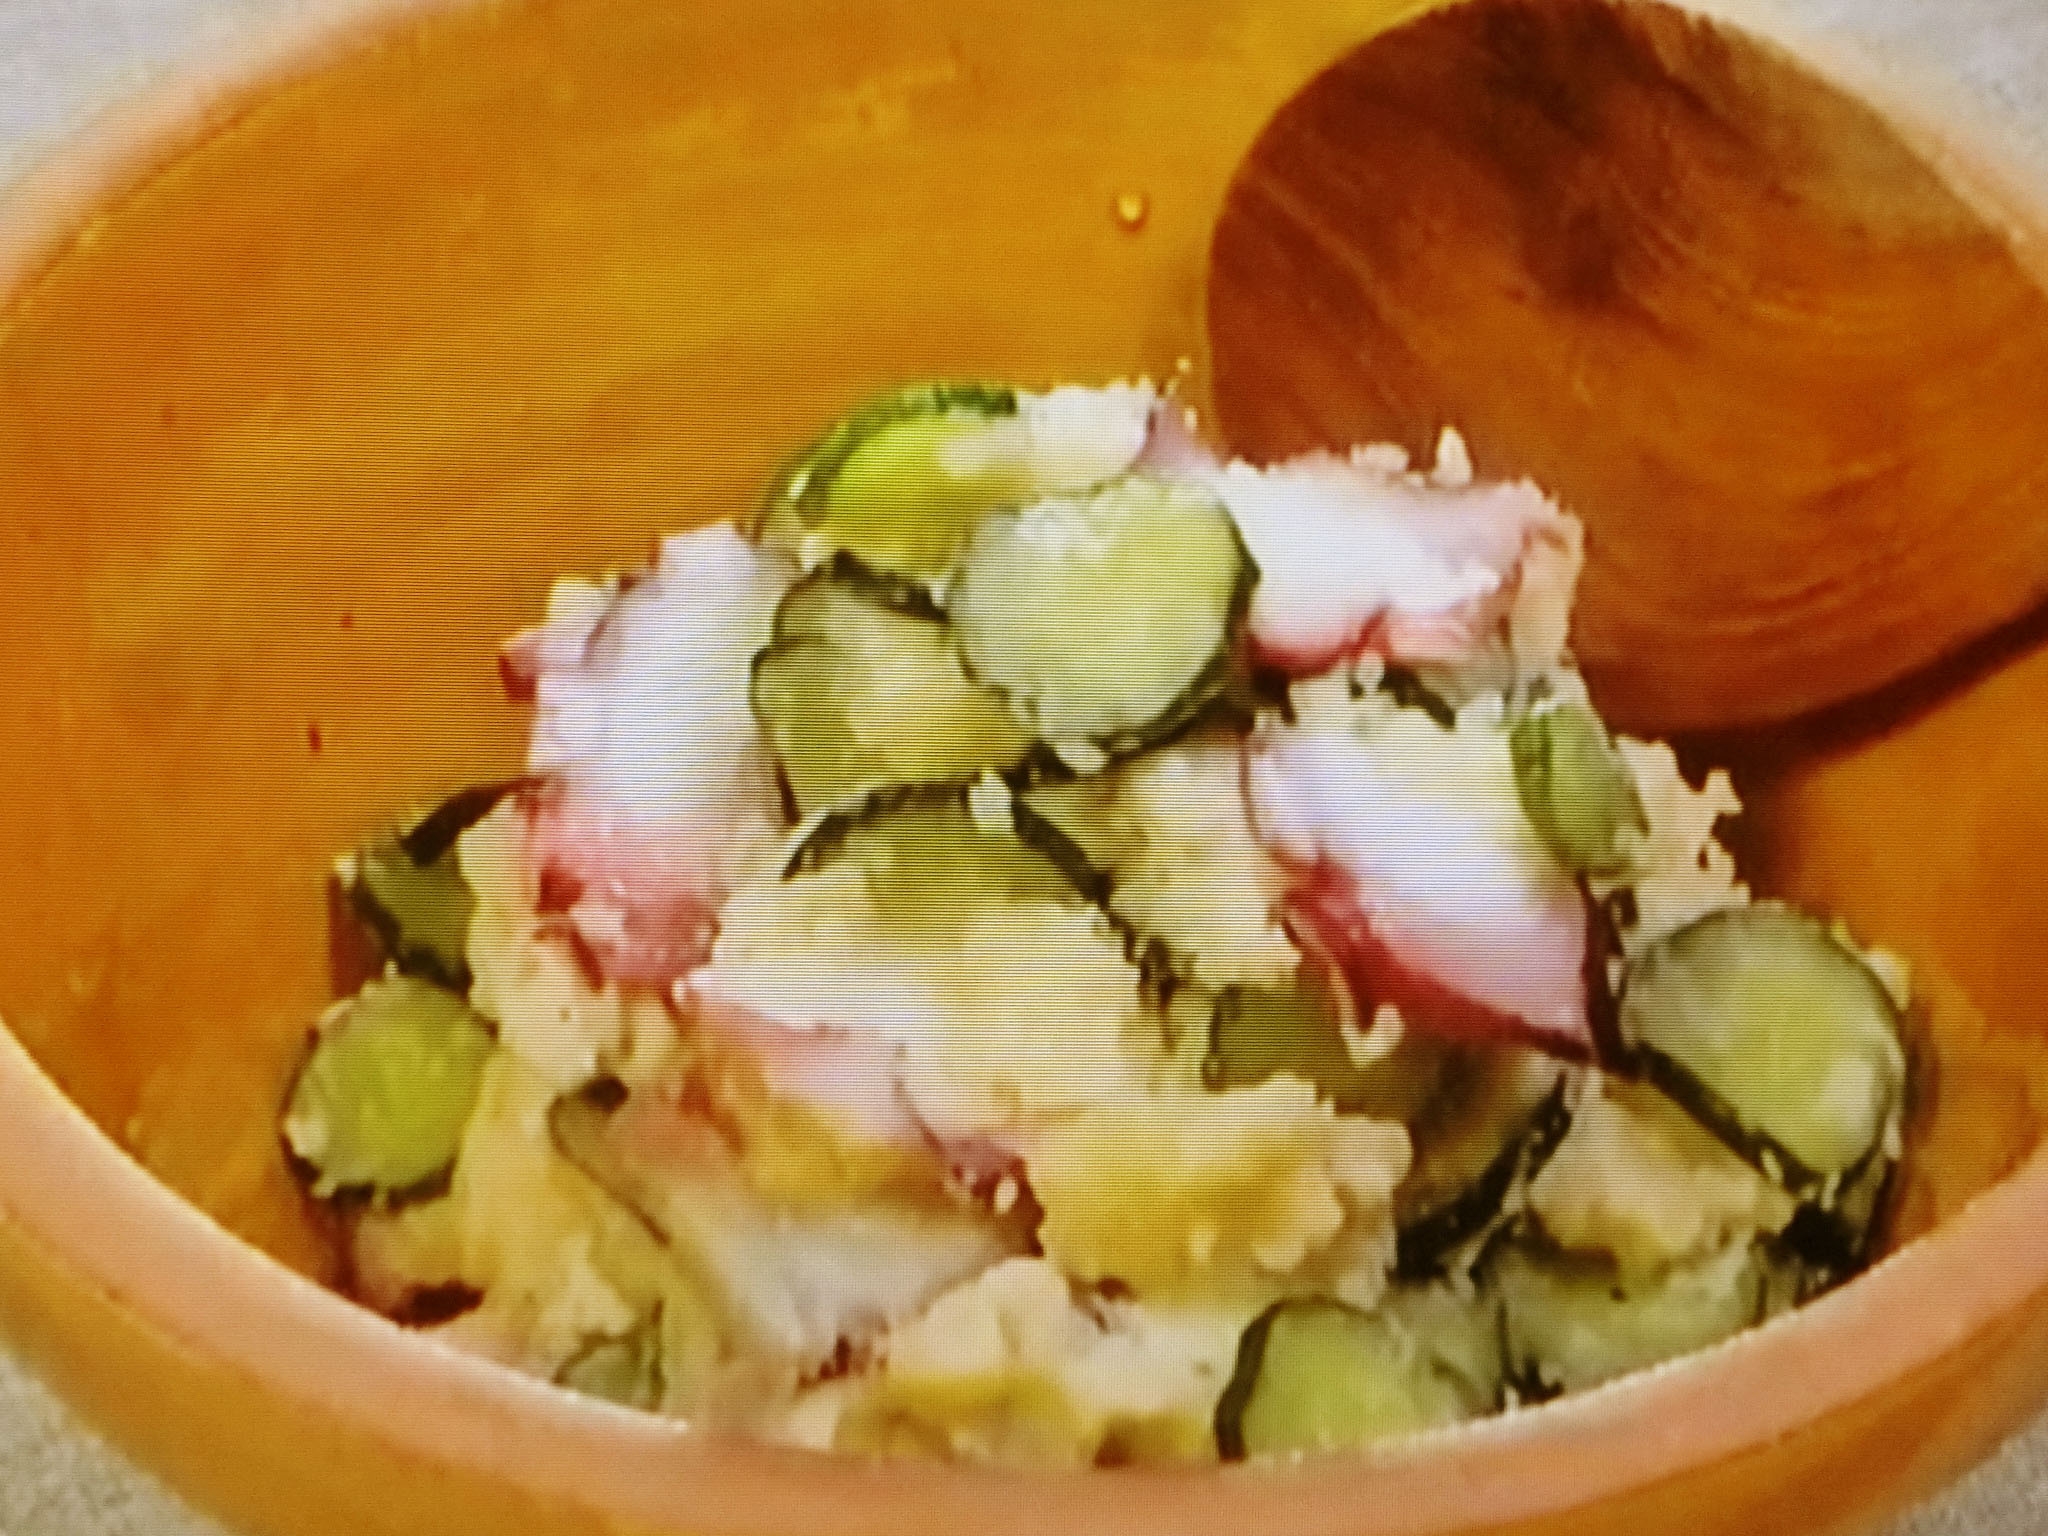 Nhkきょうの料理 たこのポテトサラダ のレシピby栗原はるみ谷原章介 9月2日 おさらいキッチン